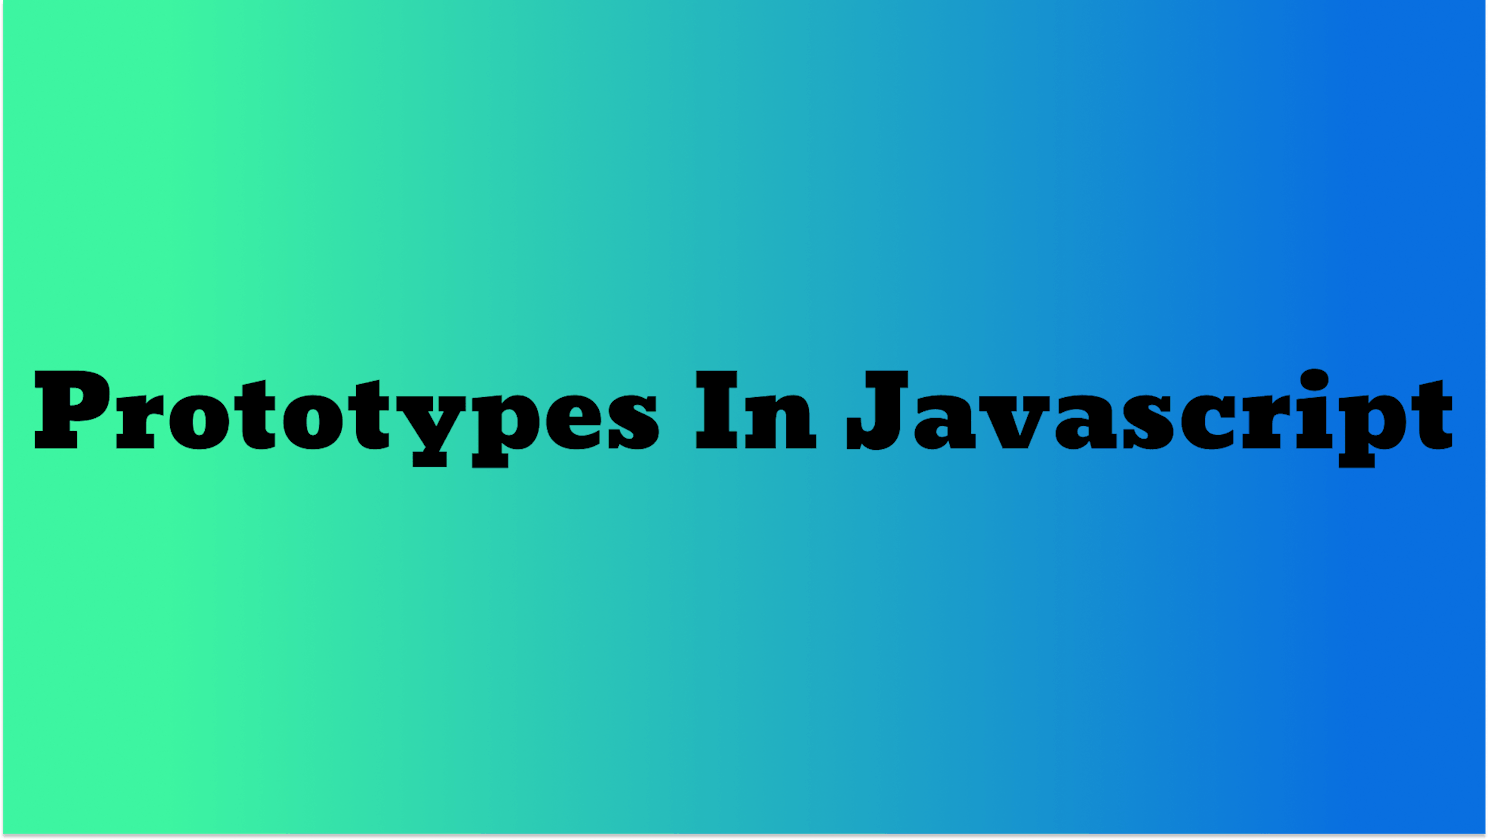 Understanding Prototypes : The Core of JavaScript's Inheritance Model